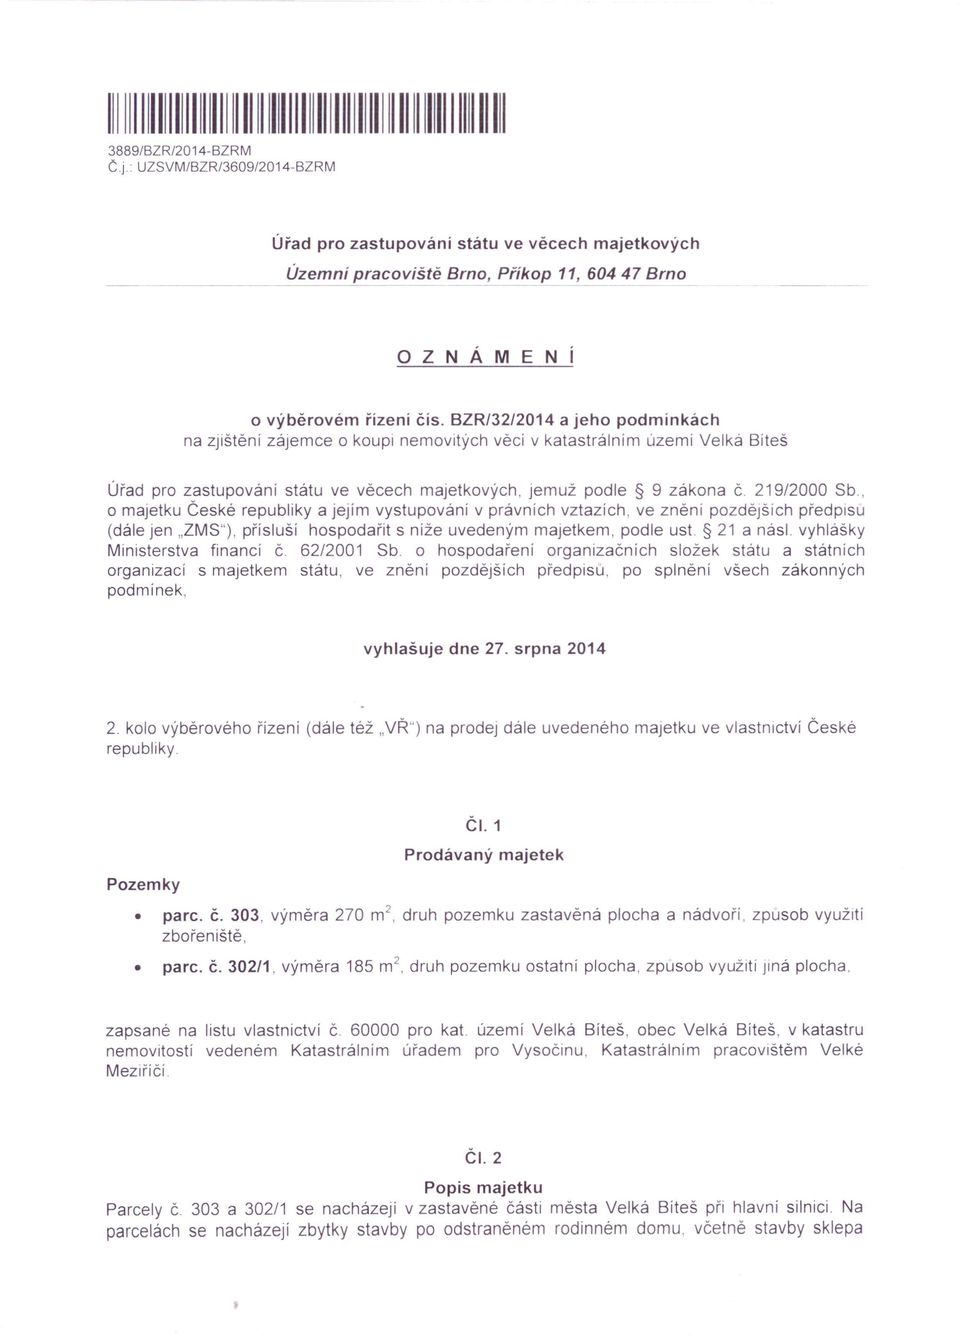 BZR/32/2014 a jeho podmínkách na zjištění zájemce o koupi nemovitých věcí v katastrálnim územi Velká Bíteš Úřad pro zastupování státu ve věcech majetkových, jemuž podle 9 zákona č. 219/2000 Sb.